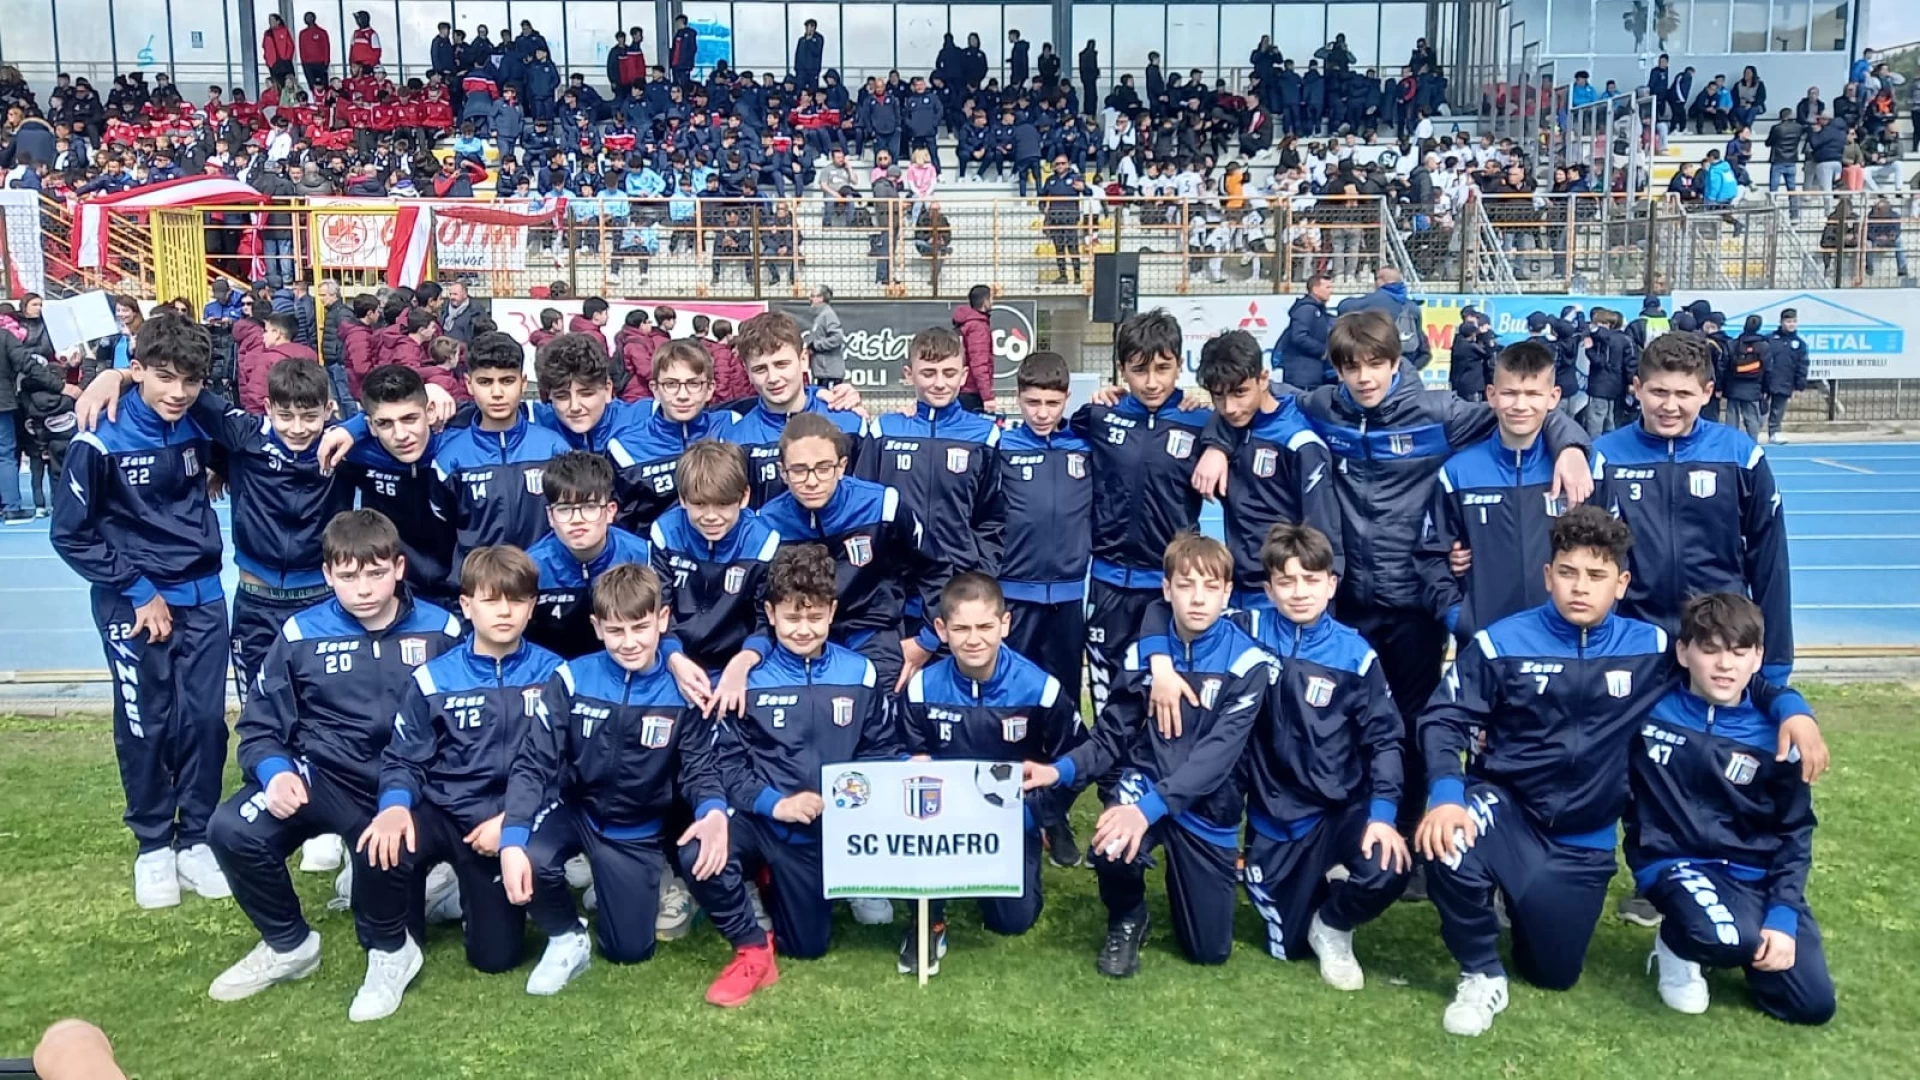 La Scuola Calcio Venafro trionfa nel torneo giovanile di Agropoli. E’ grande festa sugli spalti campani. Guarda il video.